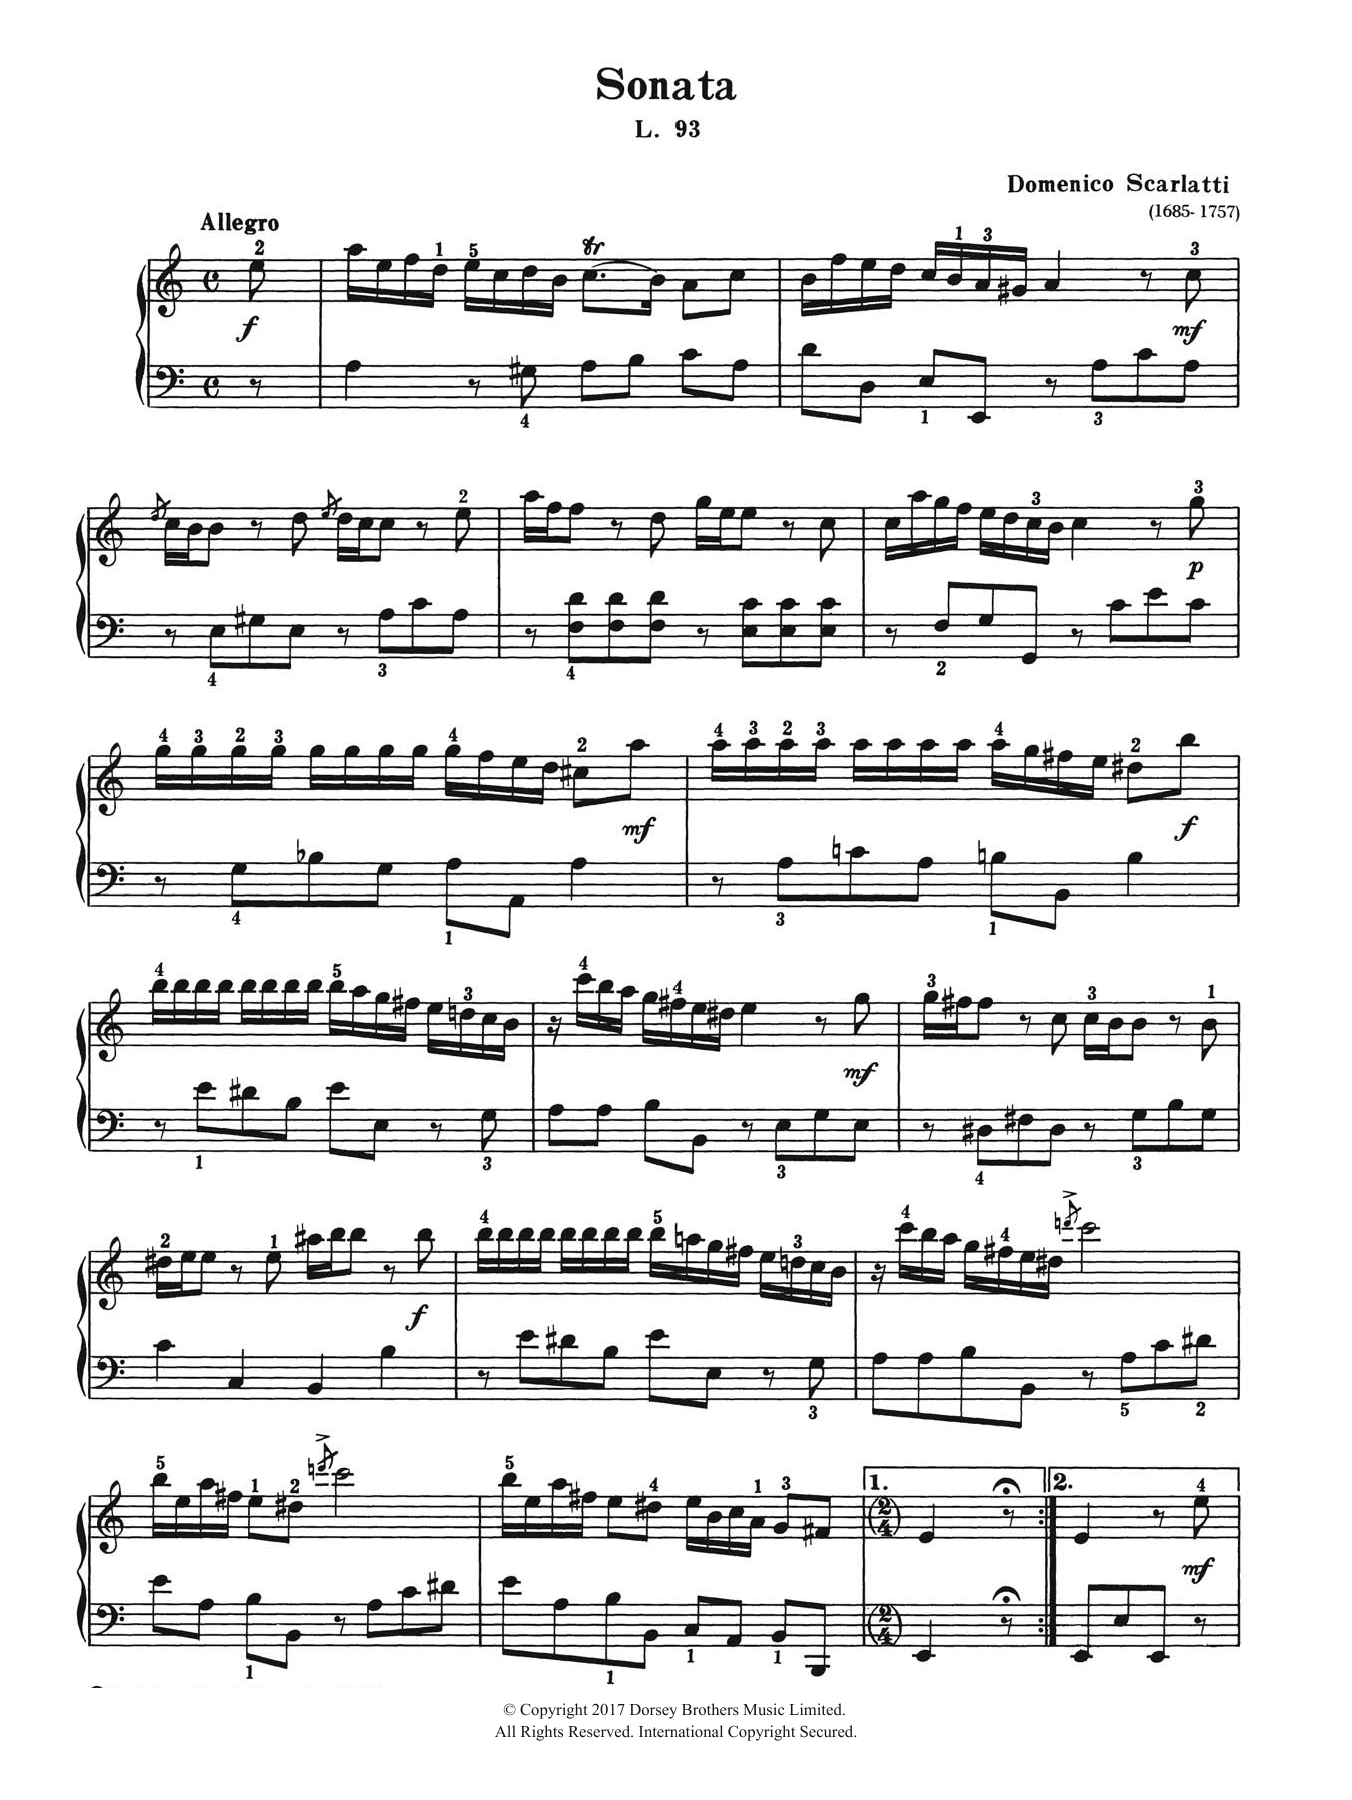 Domenico Scarlatti Sonata In A Minor L. 93 sheet music notes and chords arranged for Piano Solo